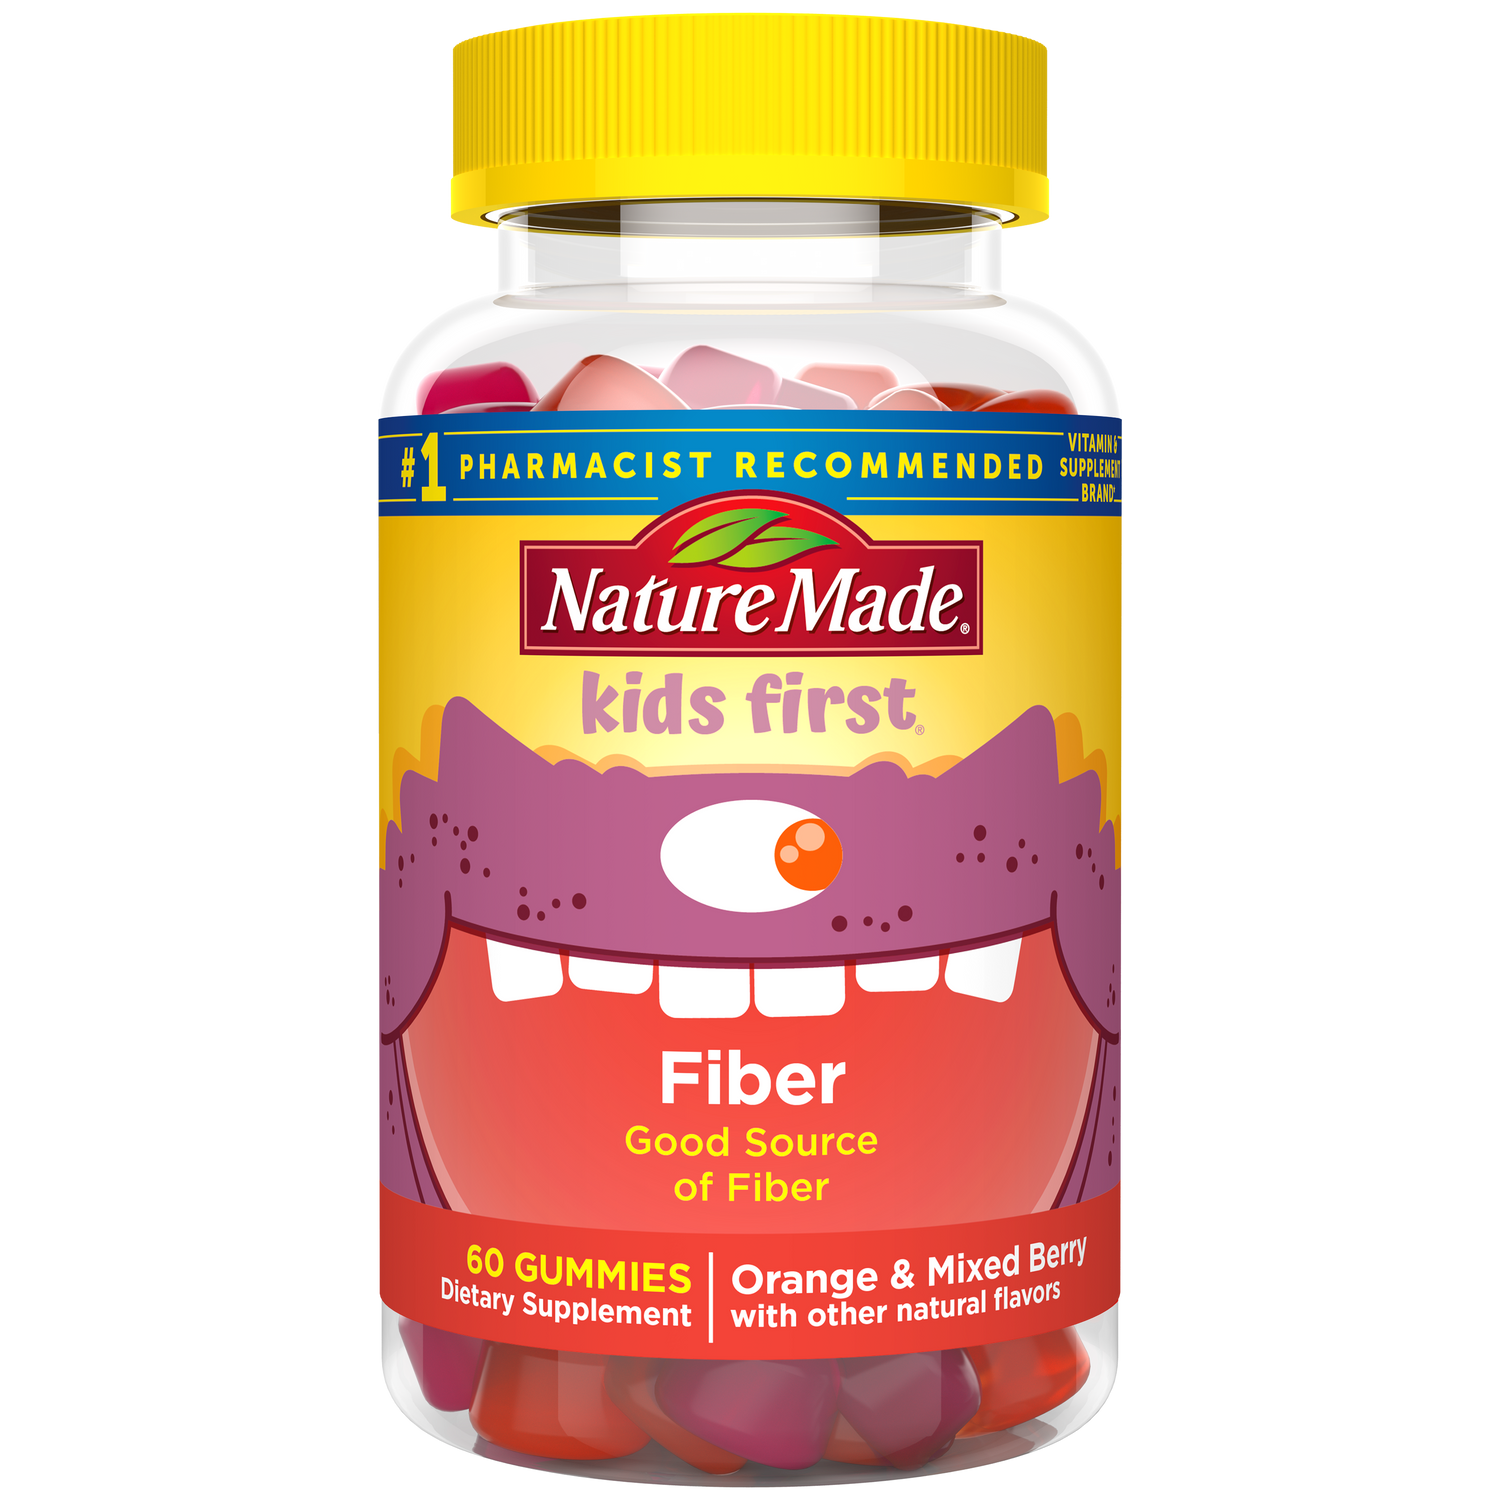 Nature Made Kids First Fiber Gummies